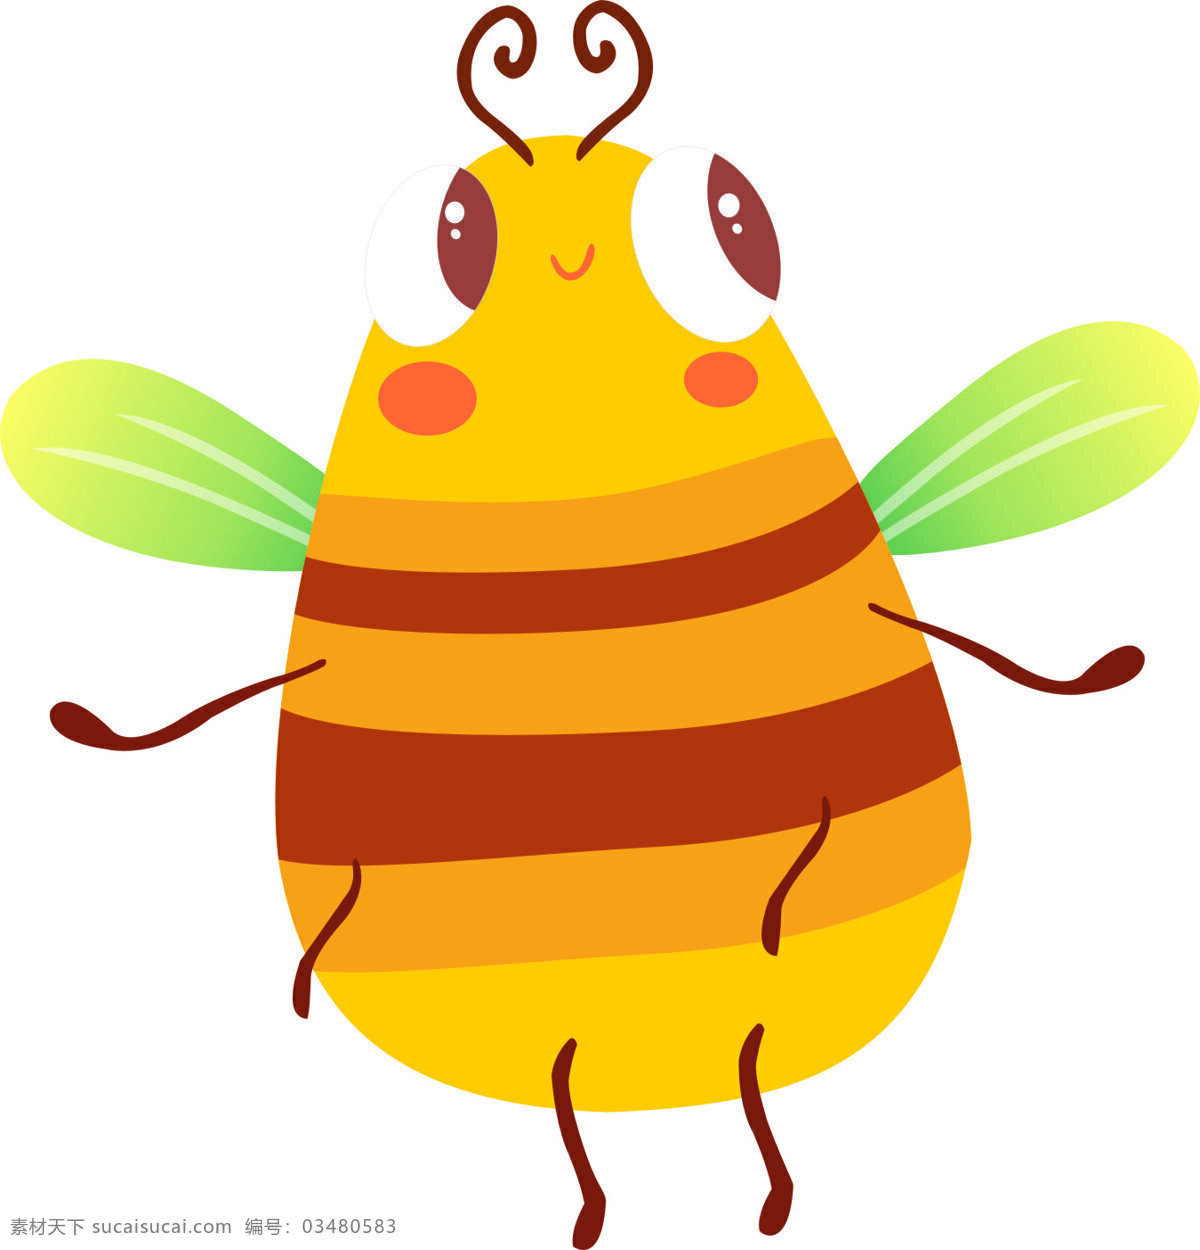 小蜜蜂图片 蜜蜂 卡通 可爱 黄色 小蜜蜂 好图共享 动漫动画 动漫人物